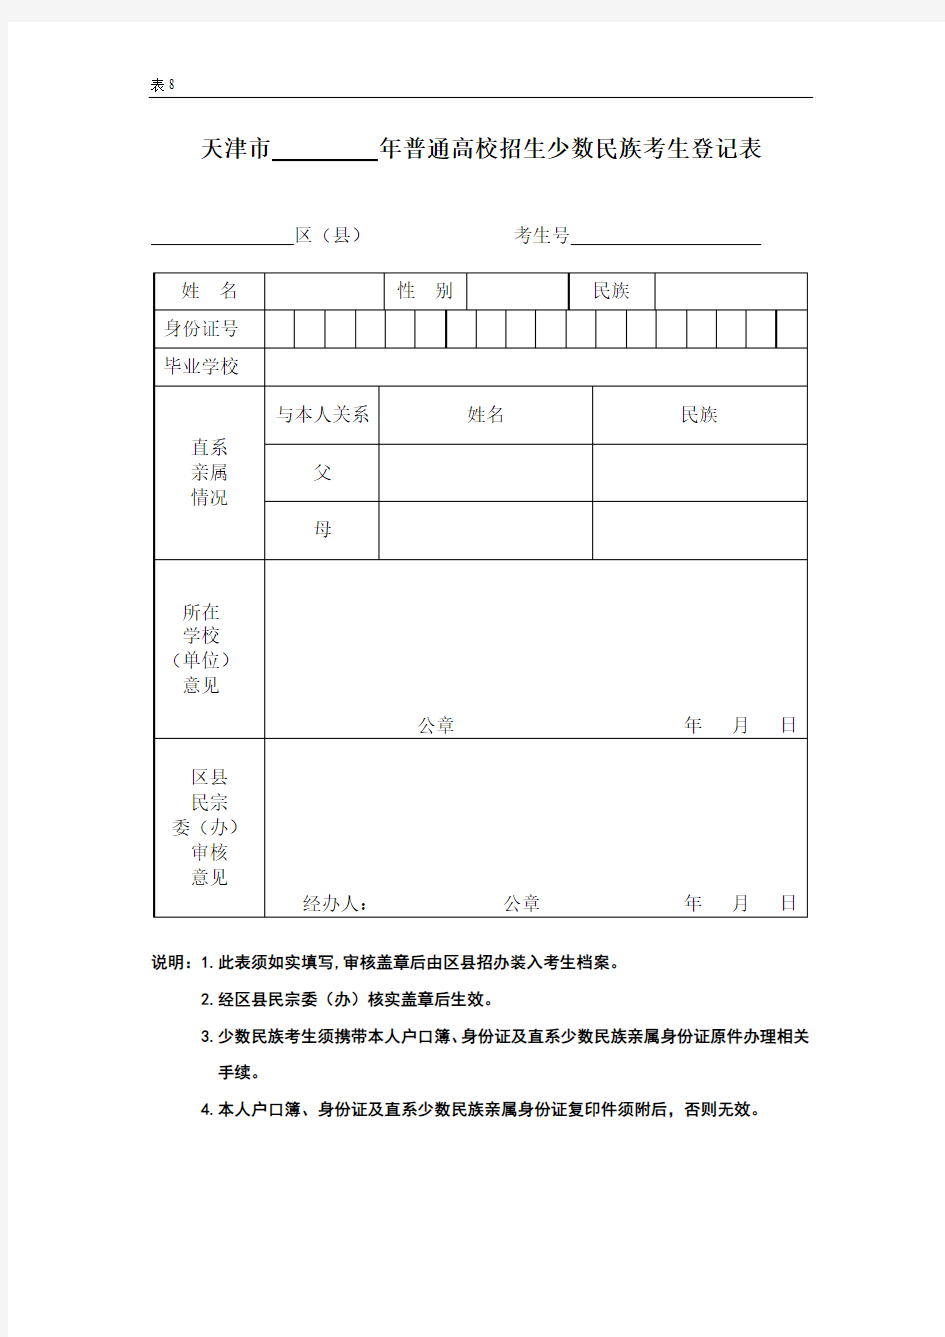 少数民族考生登记表(表8)